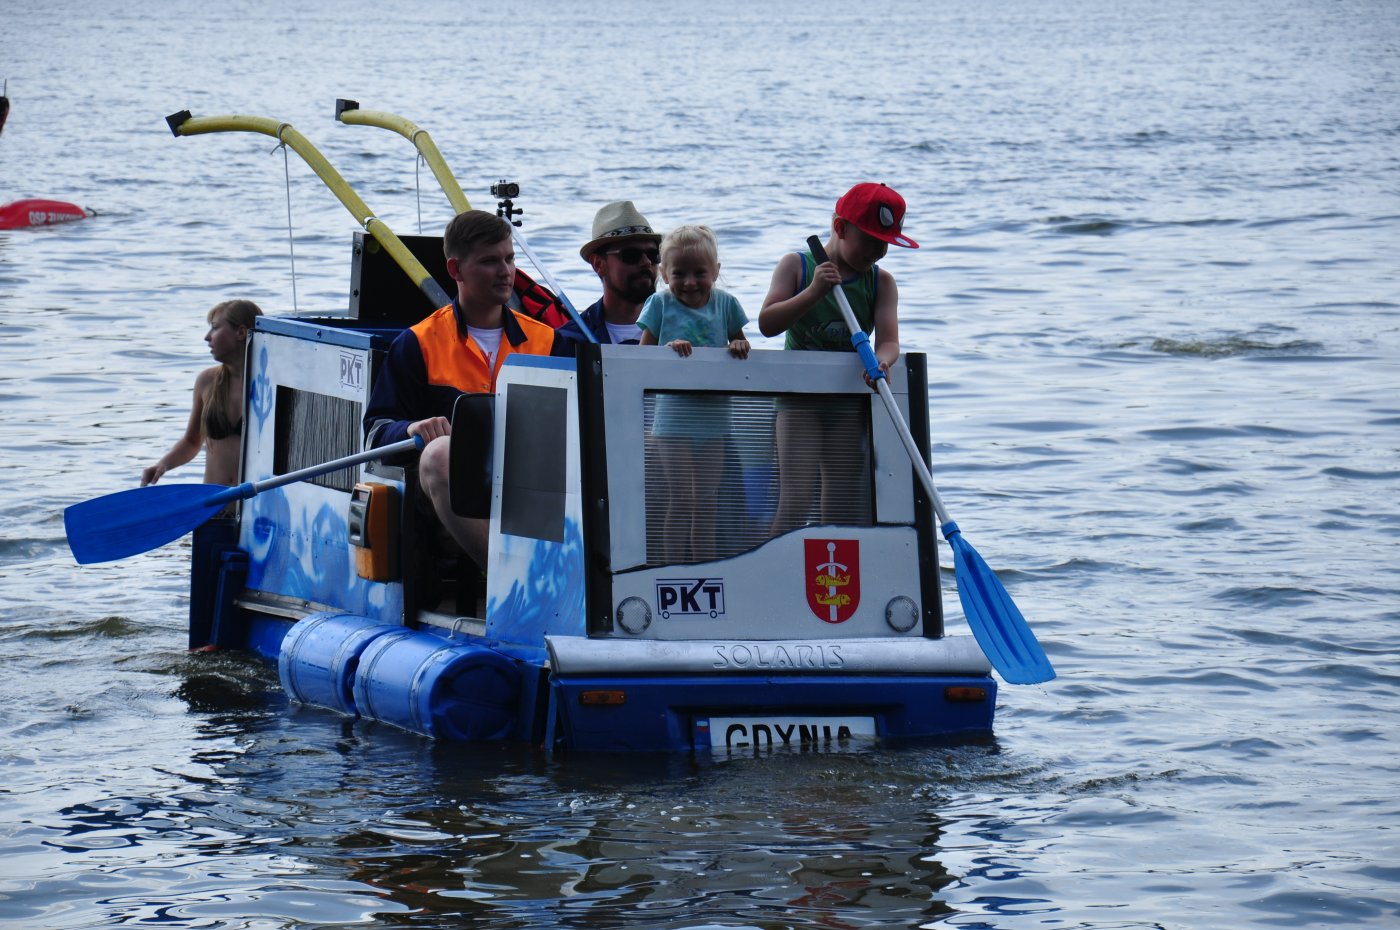 Na jeziorze Tuchom w okolicach Gdyni odbyły się zawody w pływaniu na byle czym. Gdynię reprezentował pierwszy gdyński trolejbus pływający